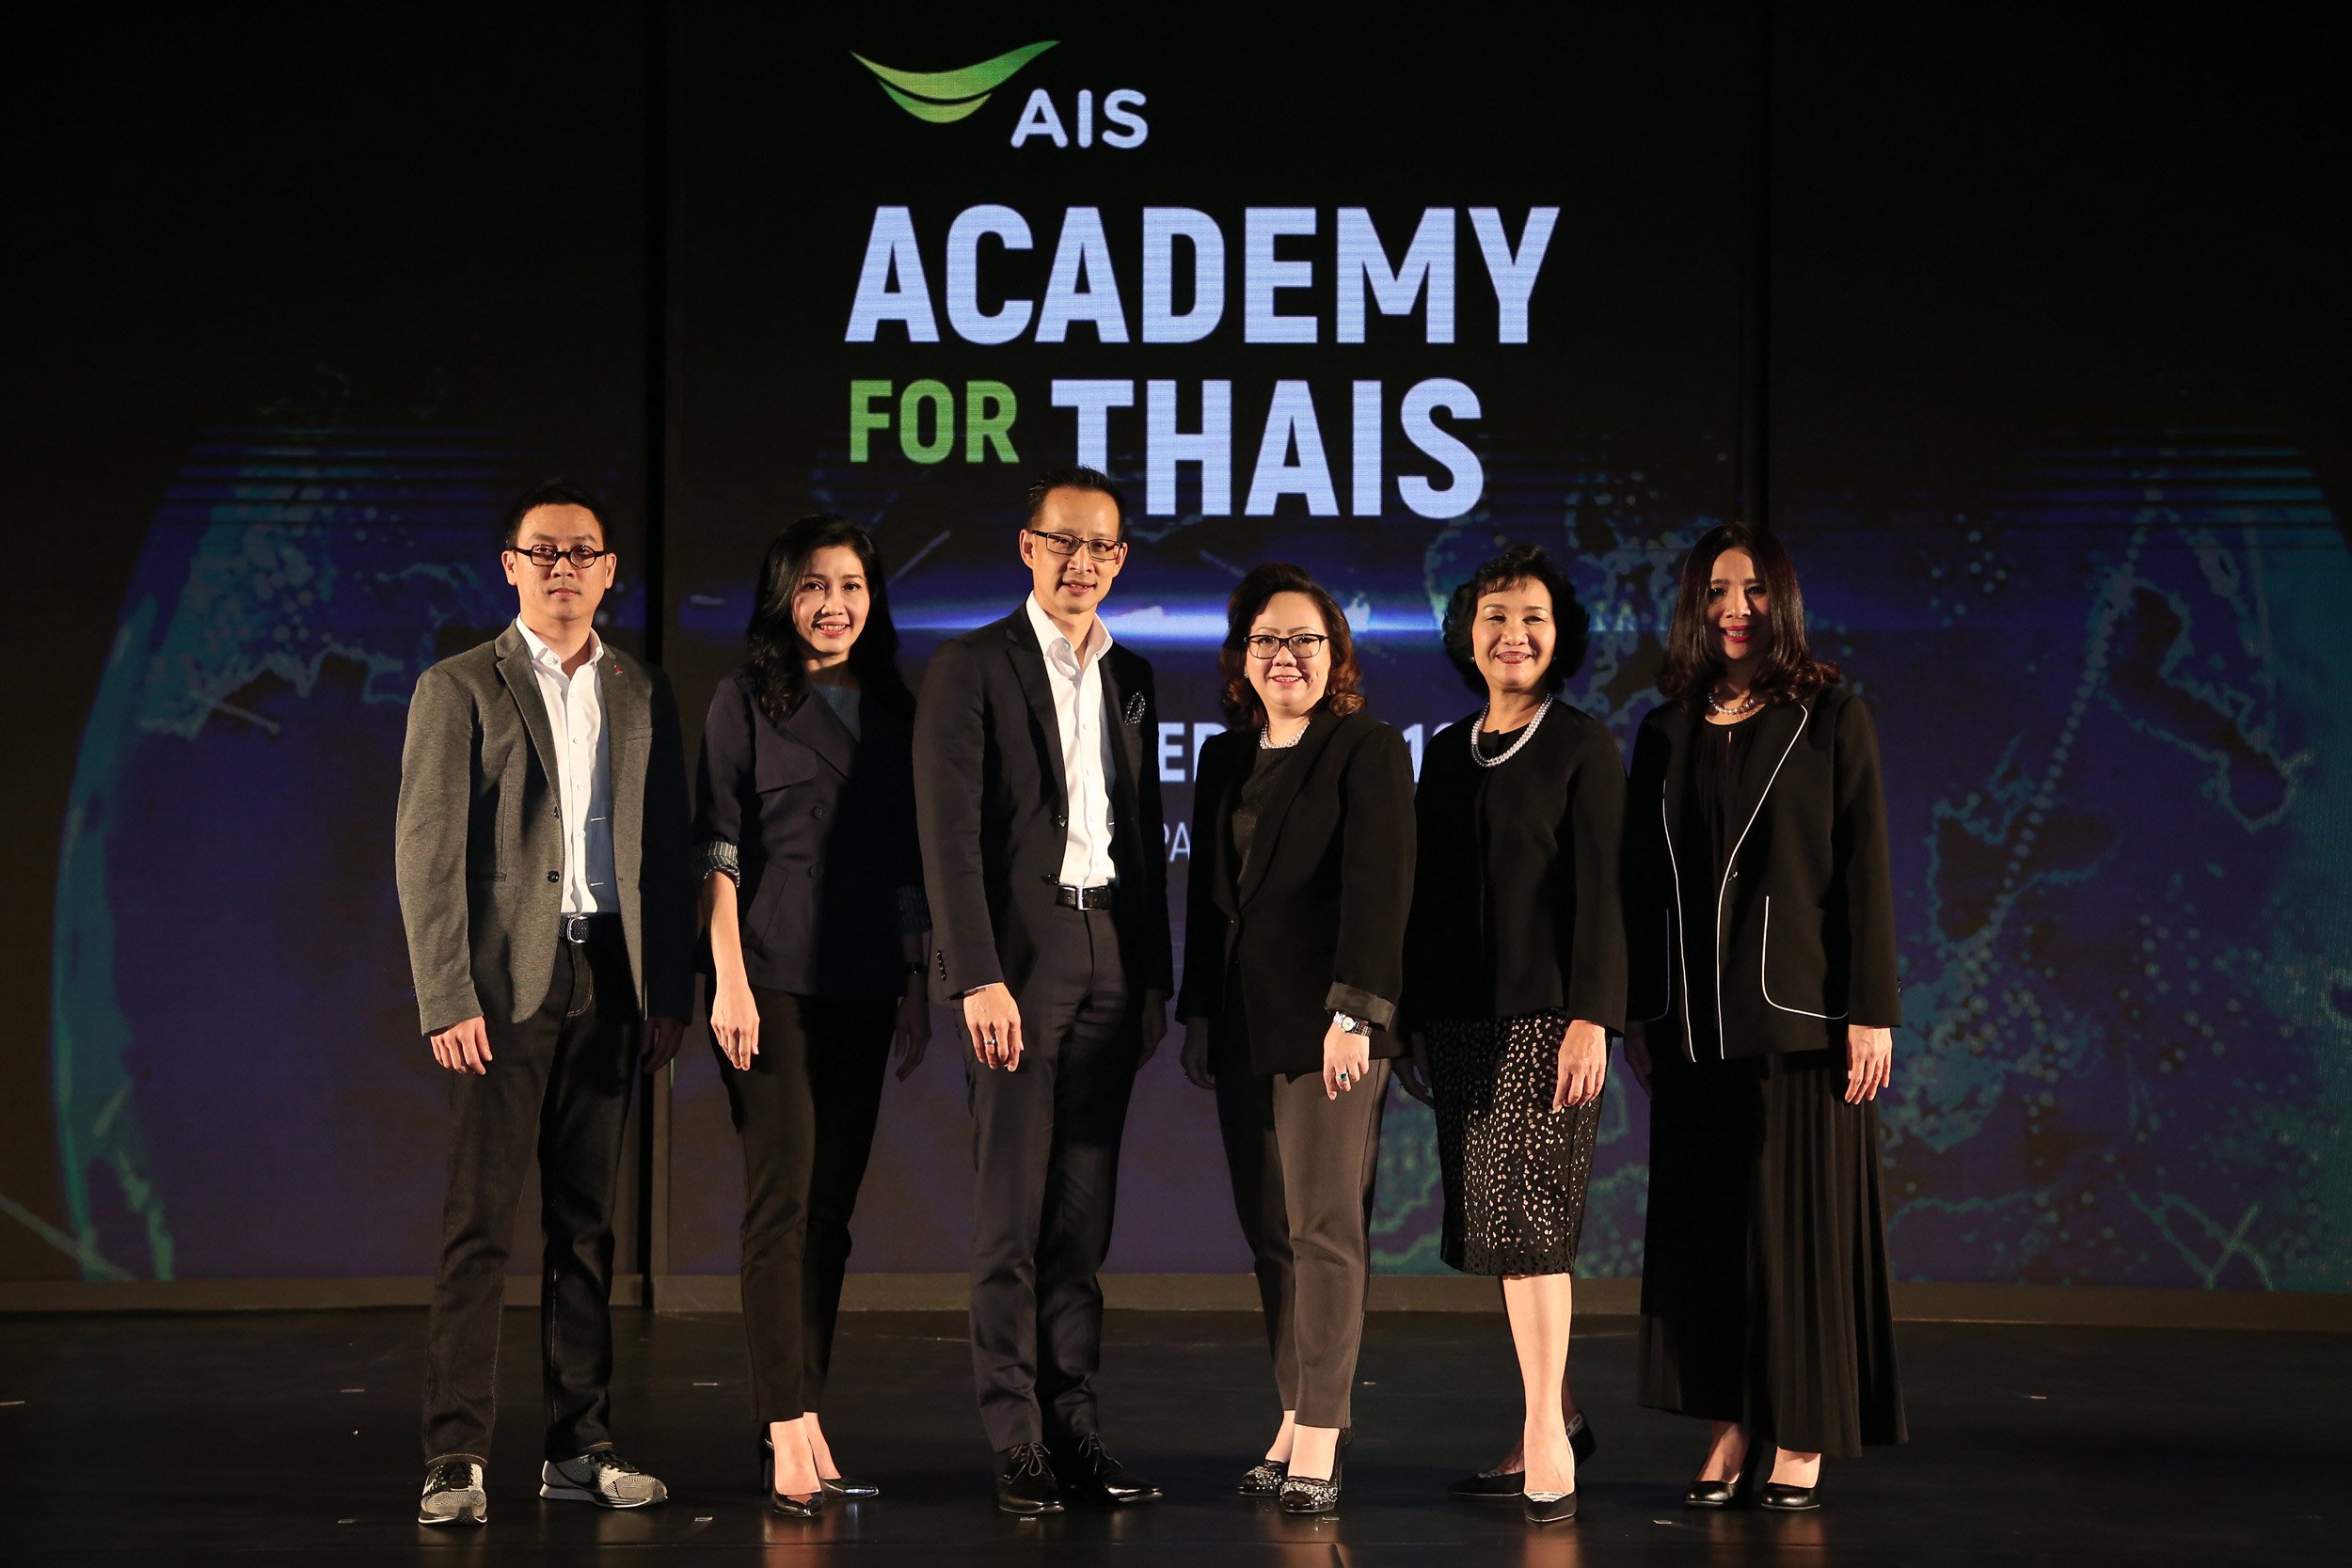 งานสัมมนา ACADEMY for THAIs ได้รับความร่วมมือจากองค์กรชั้นนำหลากหลายองค์กร - Startup Thailand Focus